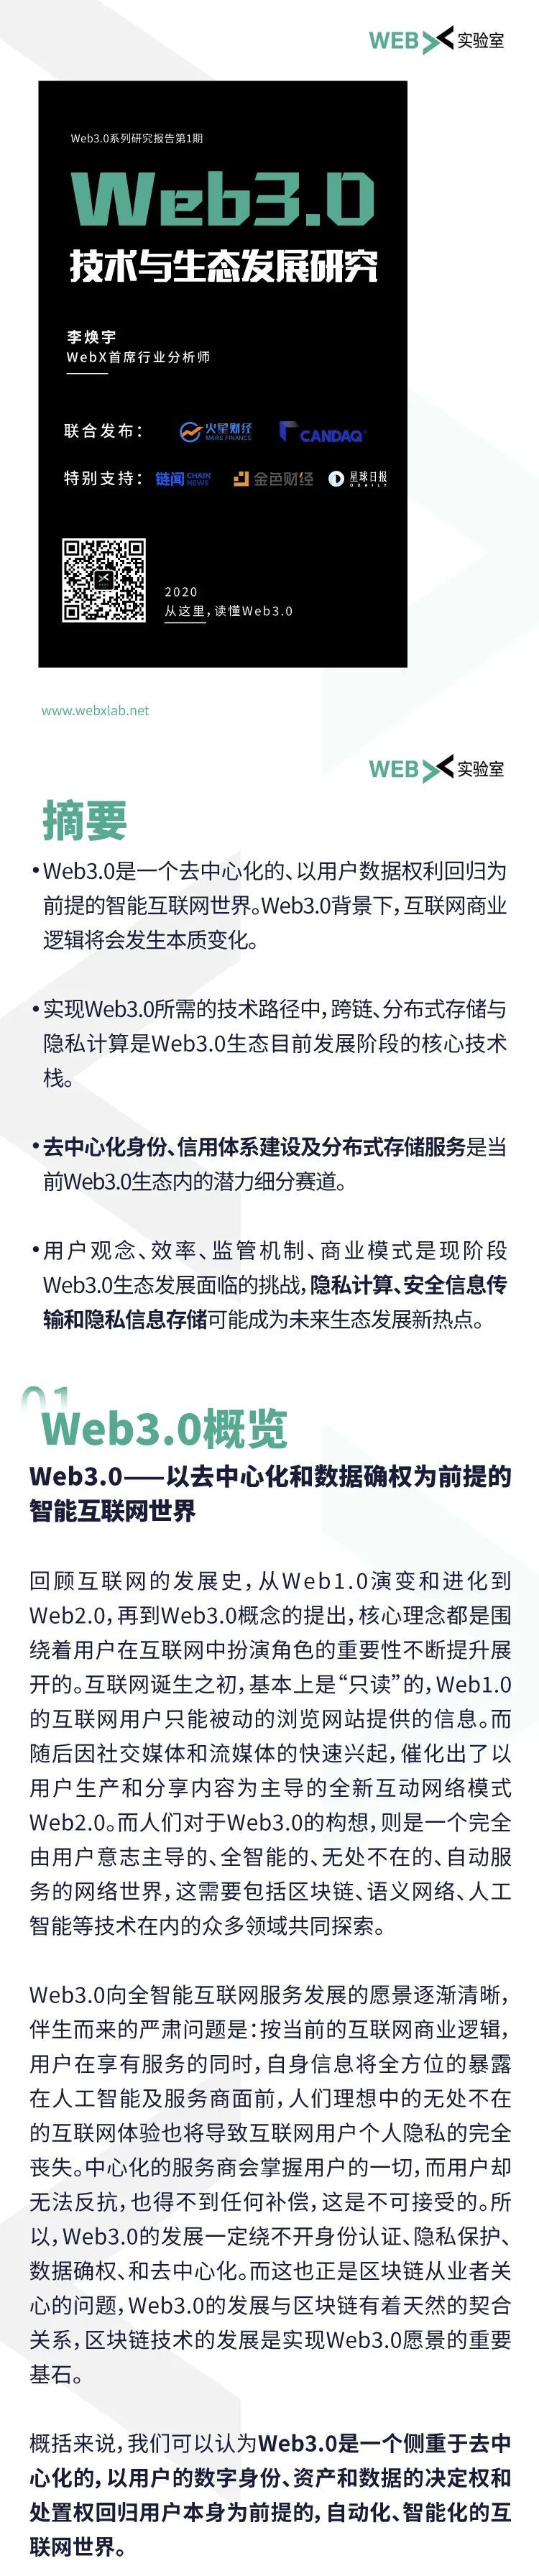 Web3.0技术与生态发展研究报告